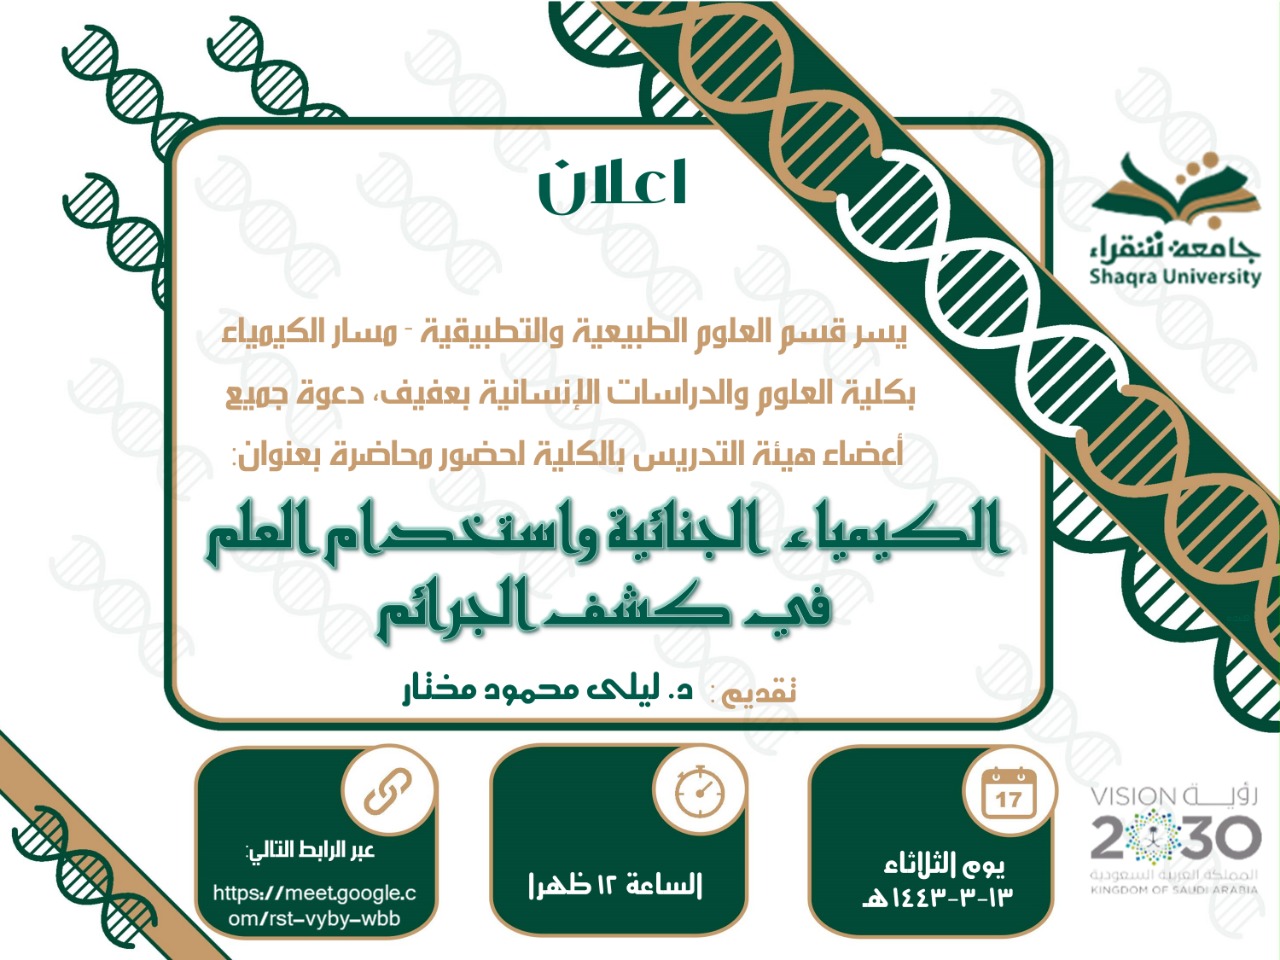 الكيمياء الجنائية واستخدام العلم في كشف الجرائم | Shaqra University